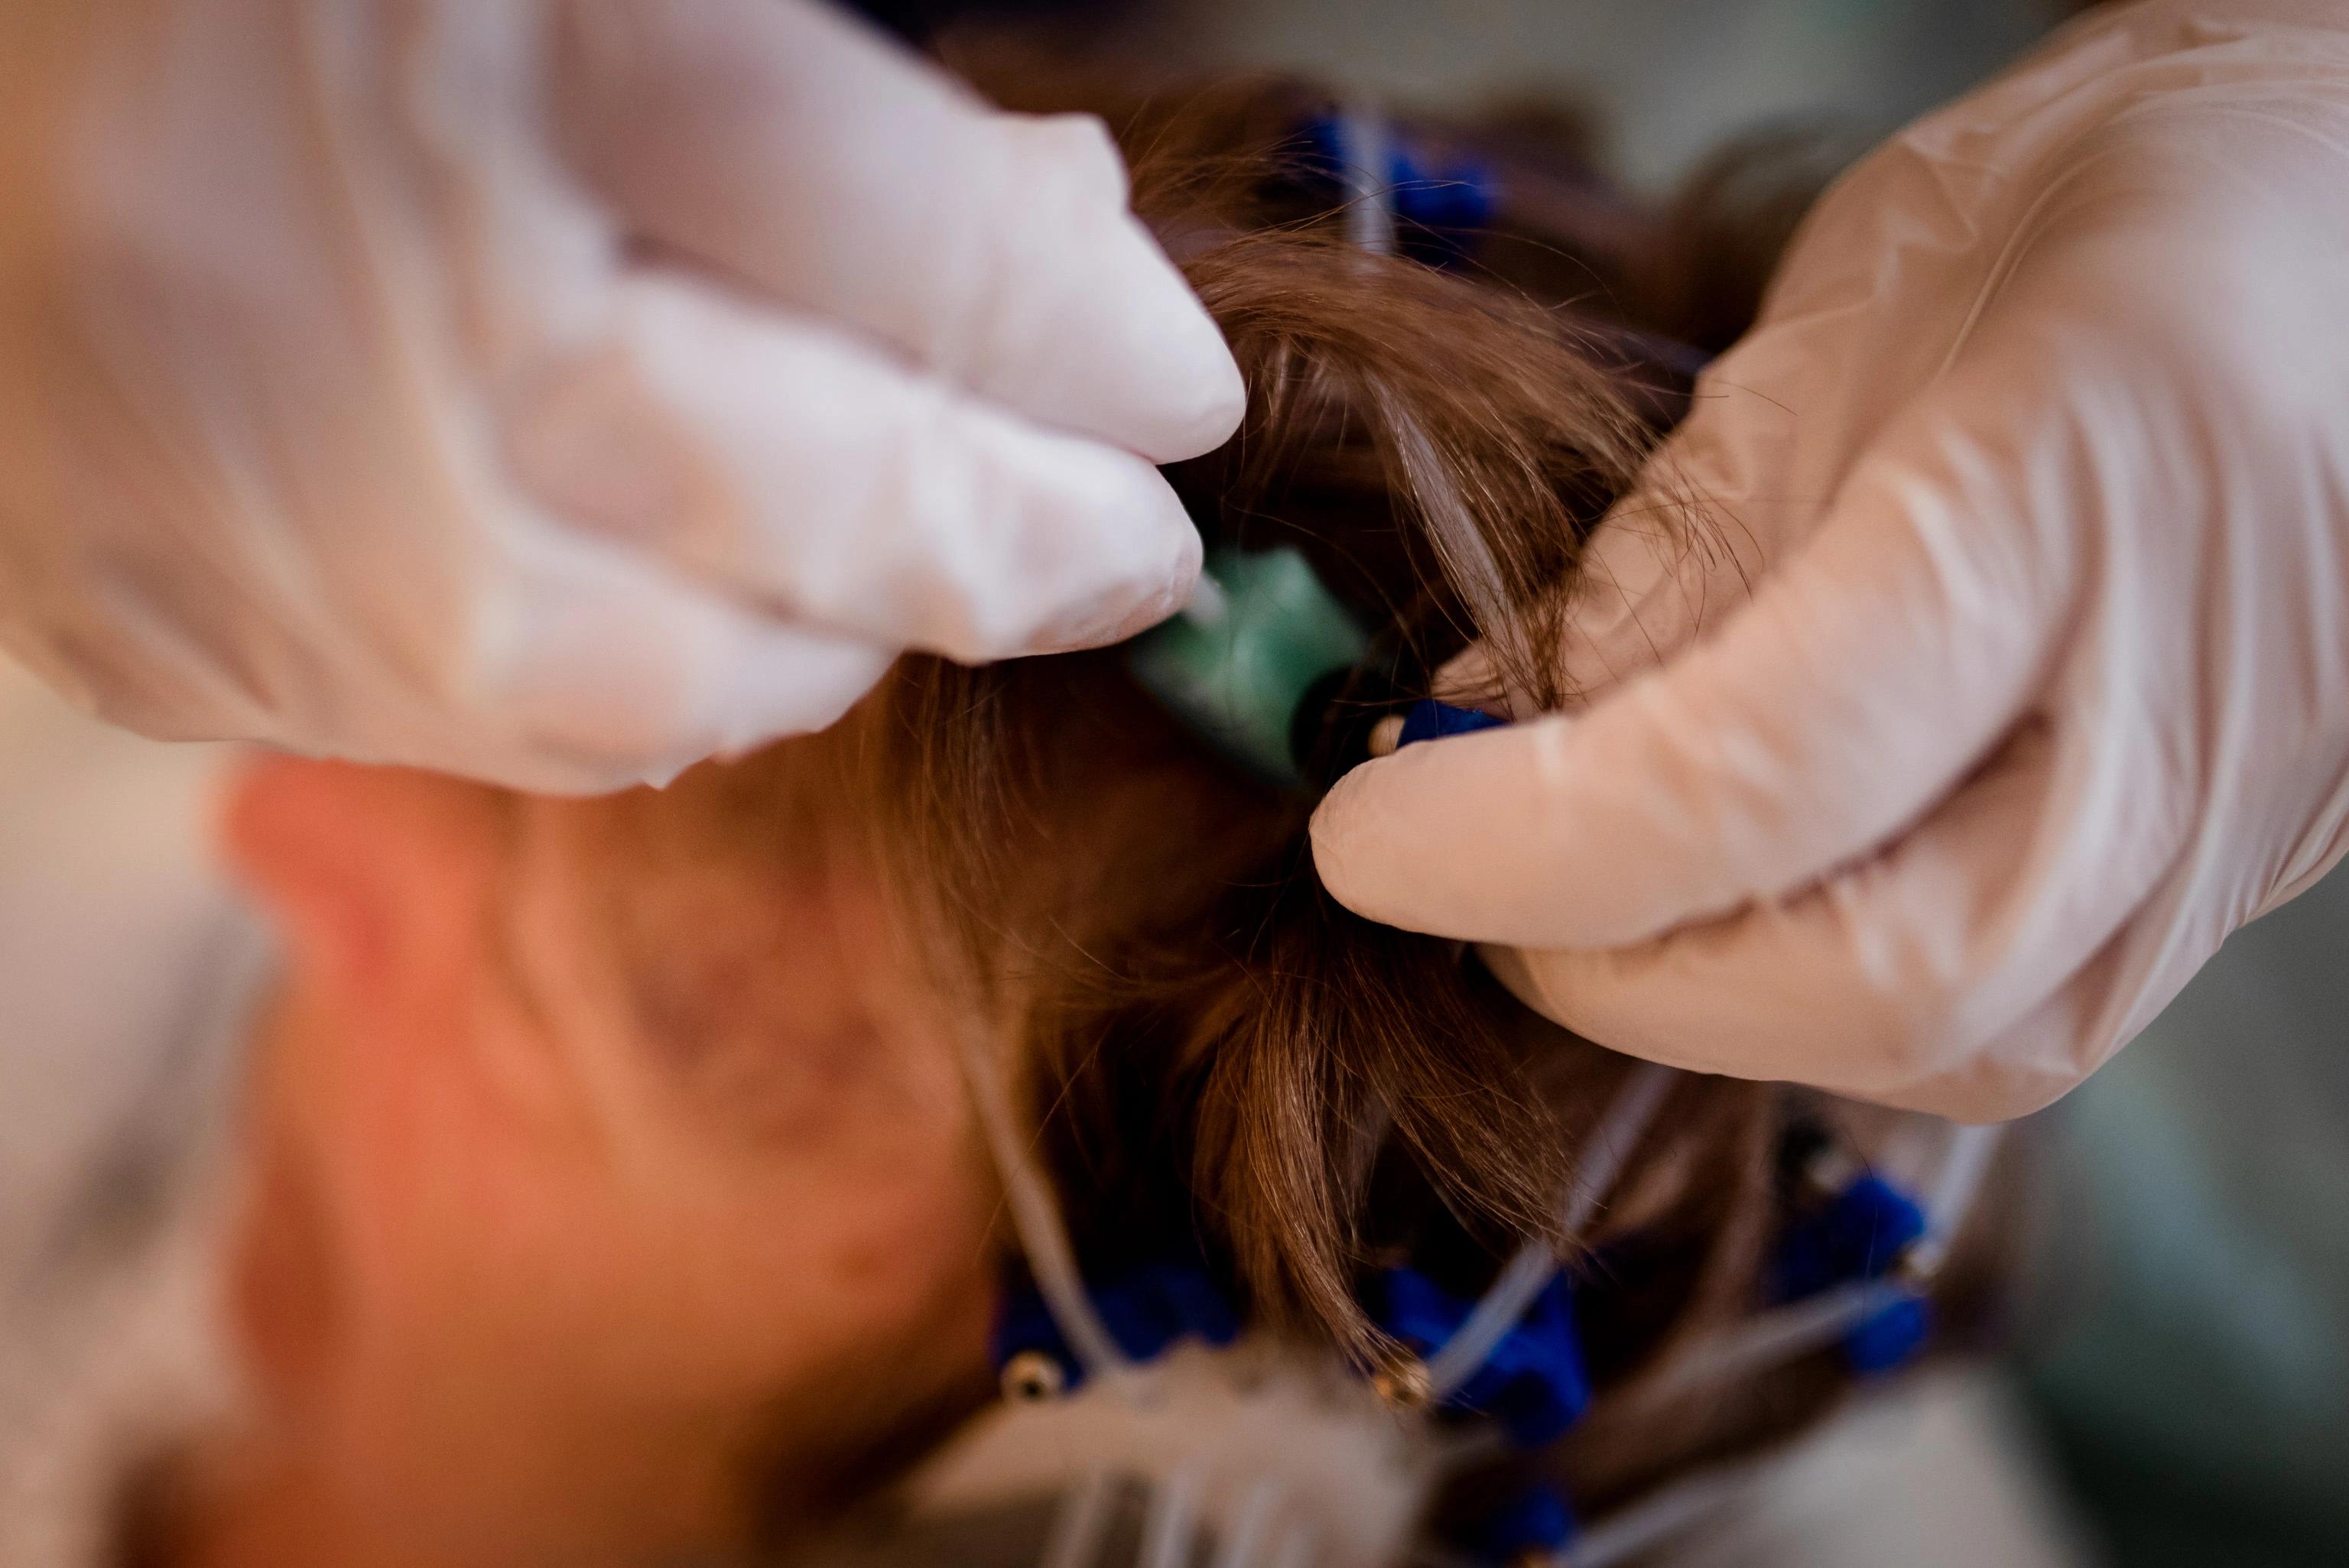 Bild: Elektroden werden am Kopf einer Patientin angebracht